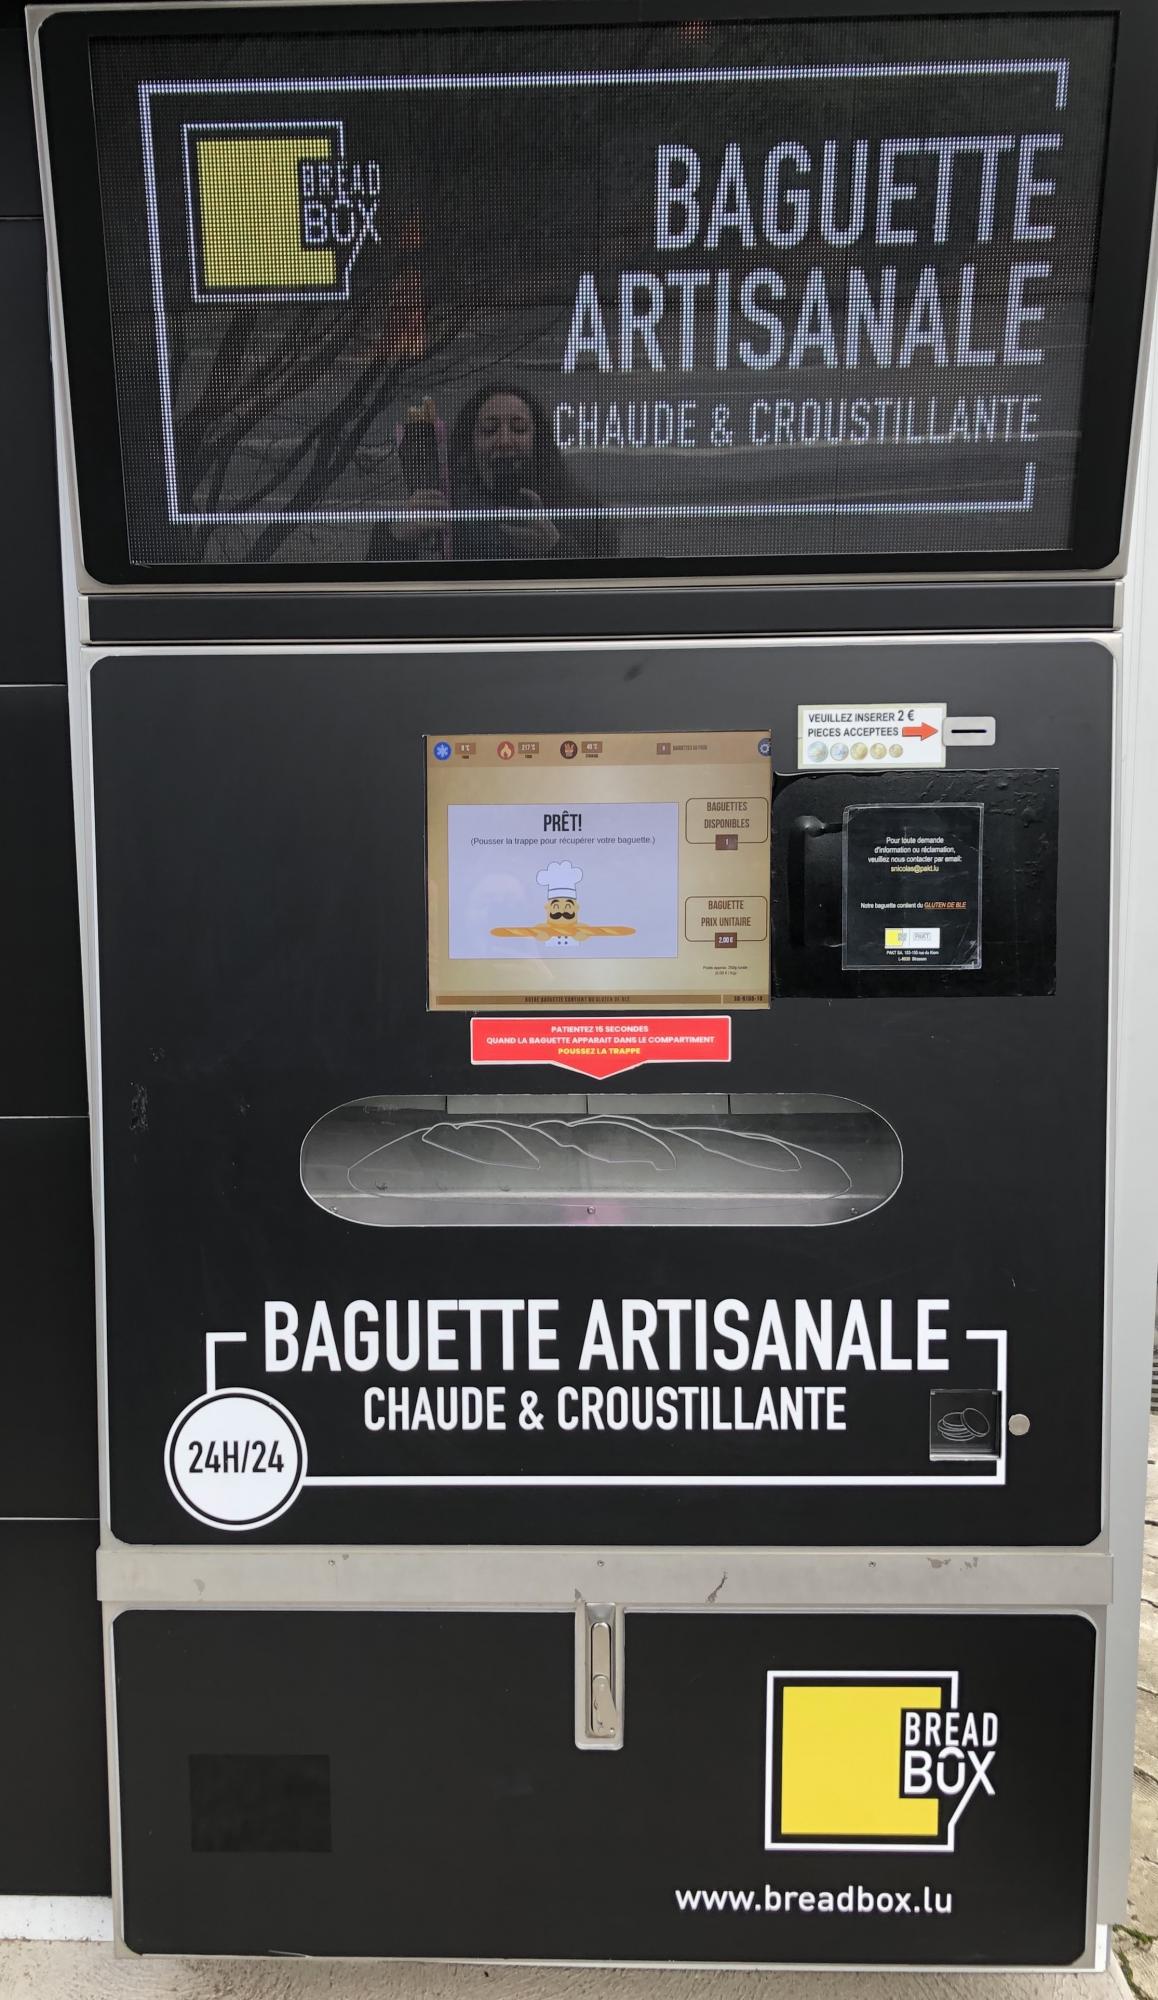 Frances Garnett reflected on surface of baguette vending machine